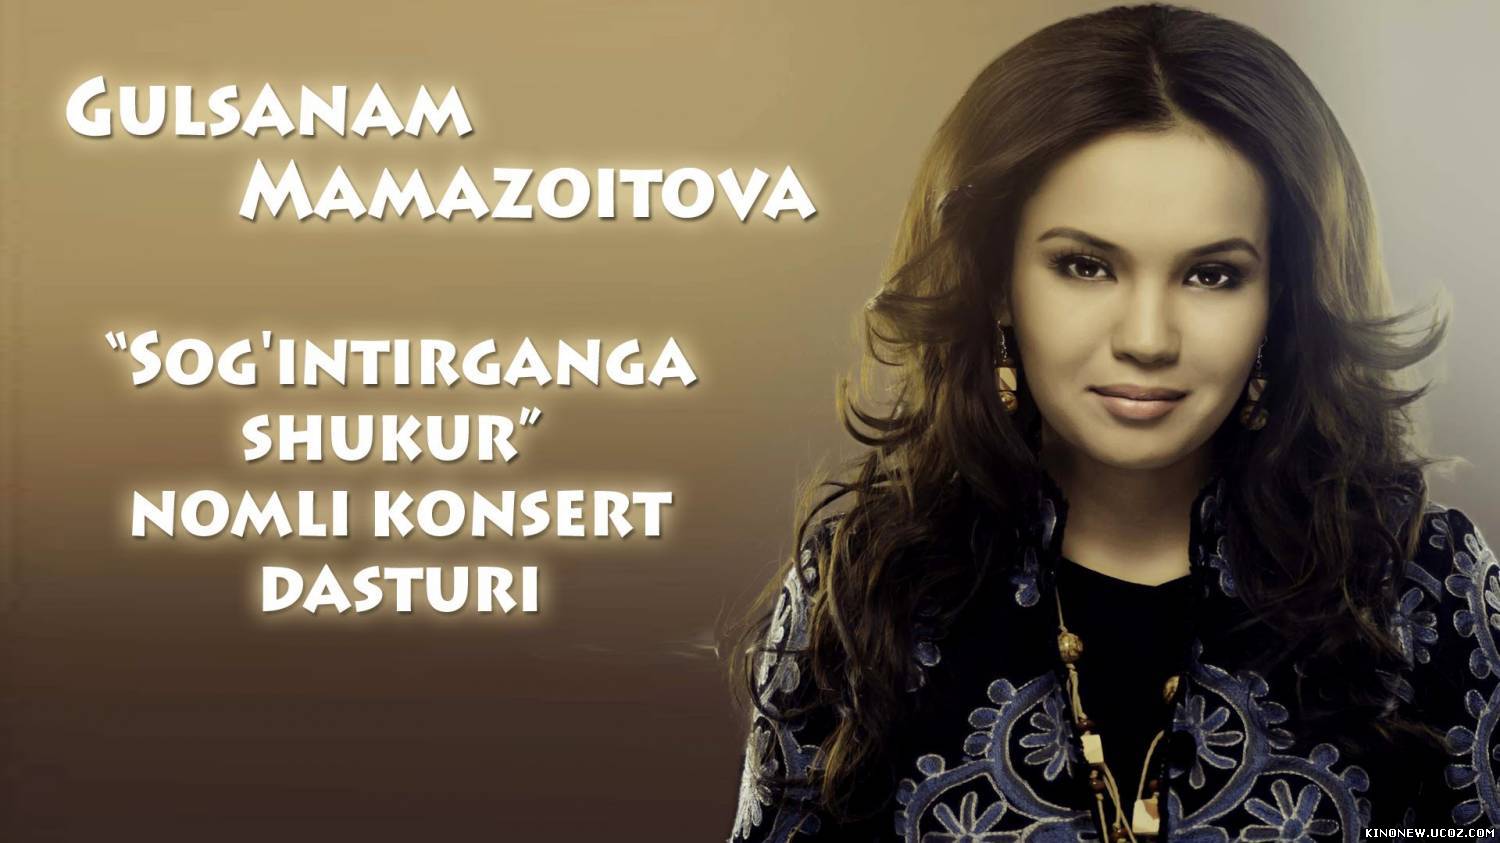 Скрипн Gulsanam Mamazoitova Sog'intirganga shukur nomli konsert dasturi 2012